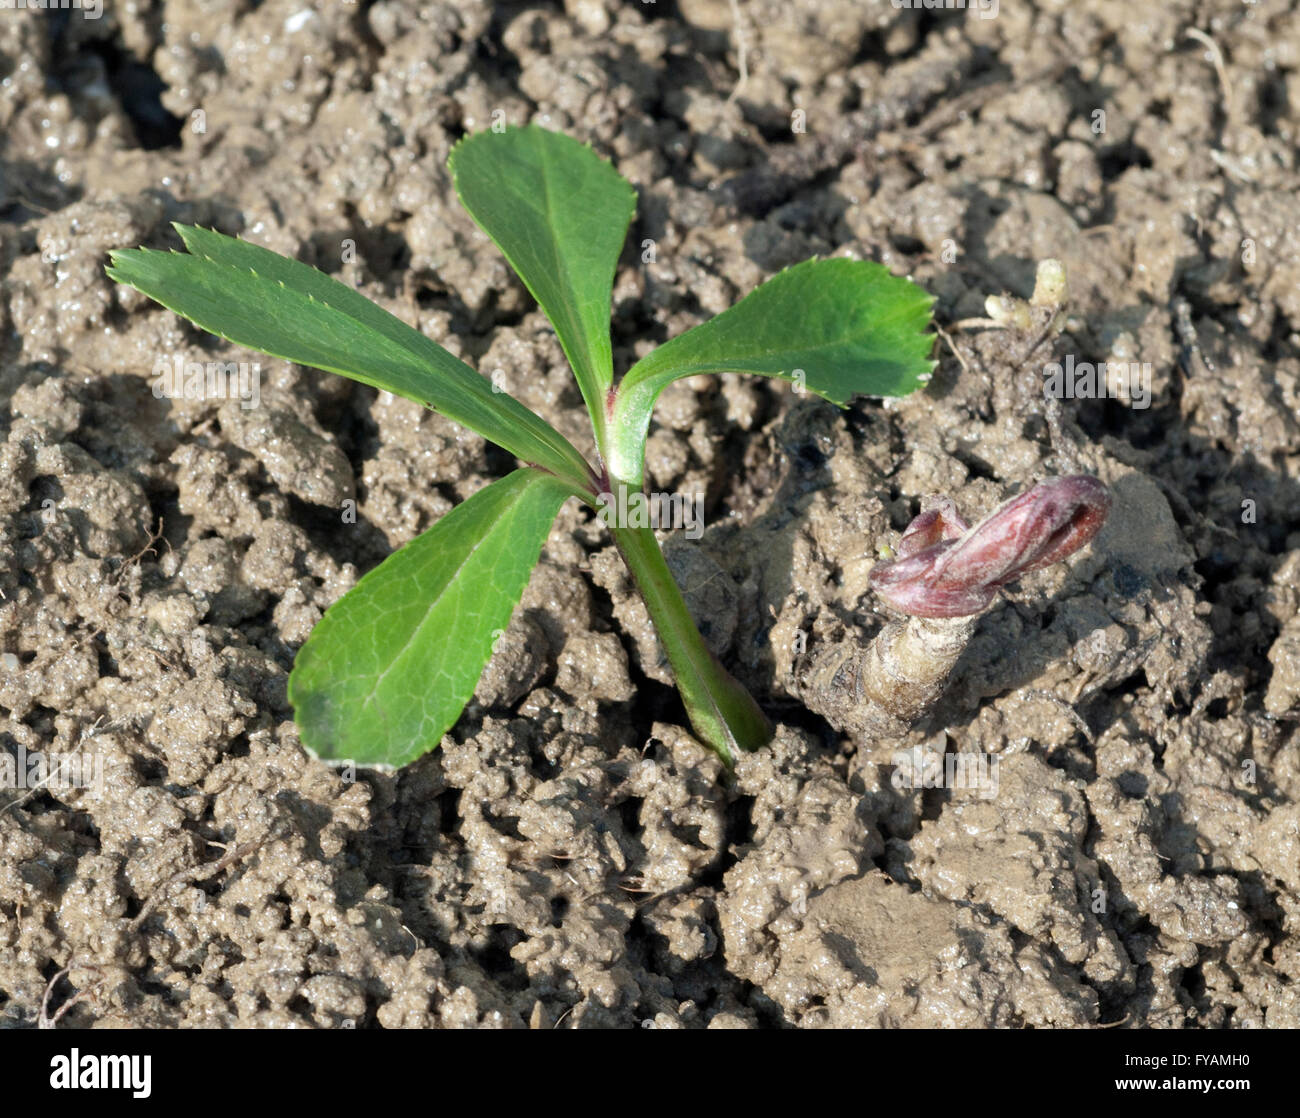 Die Christrose Ist eine Heilpflanze und Arzneipflanze, Wildpflanze die im Winter weiss blueht Stock Photo